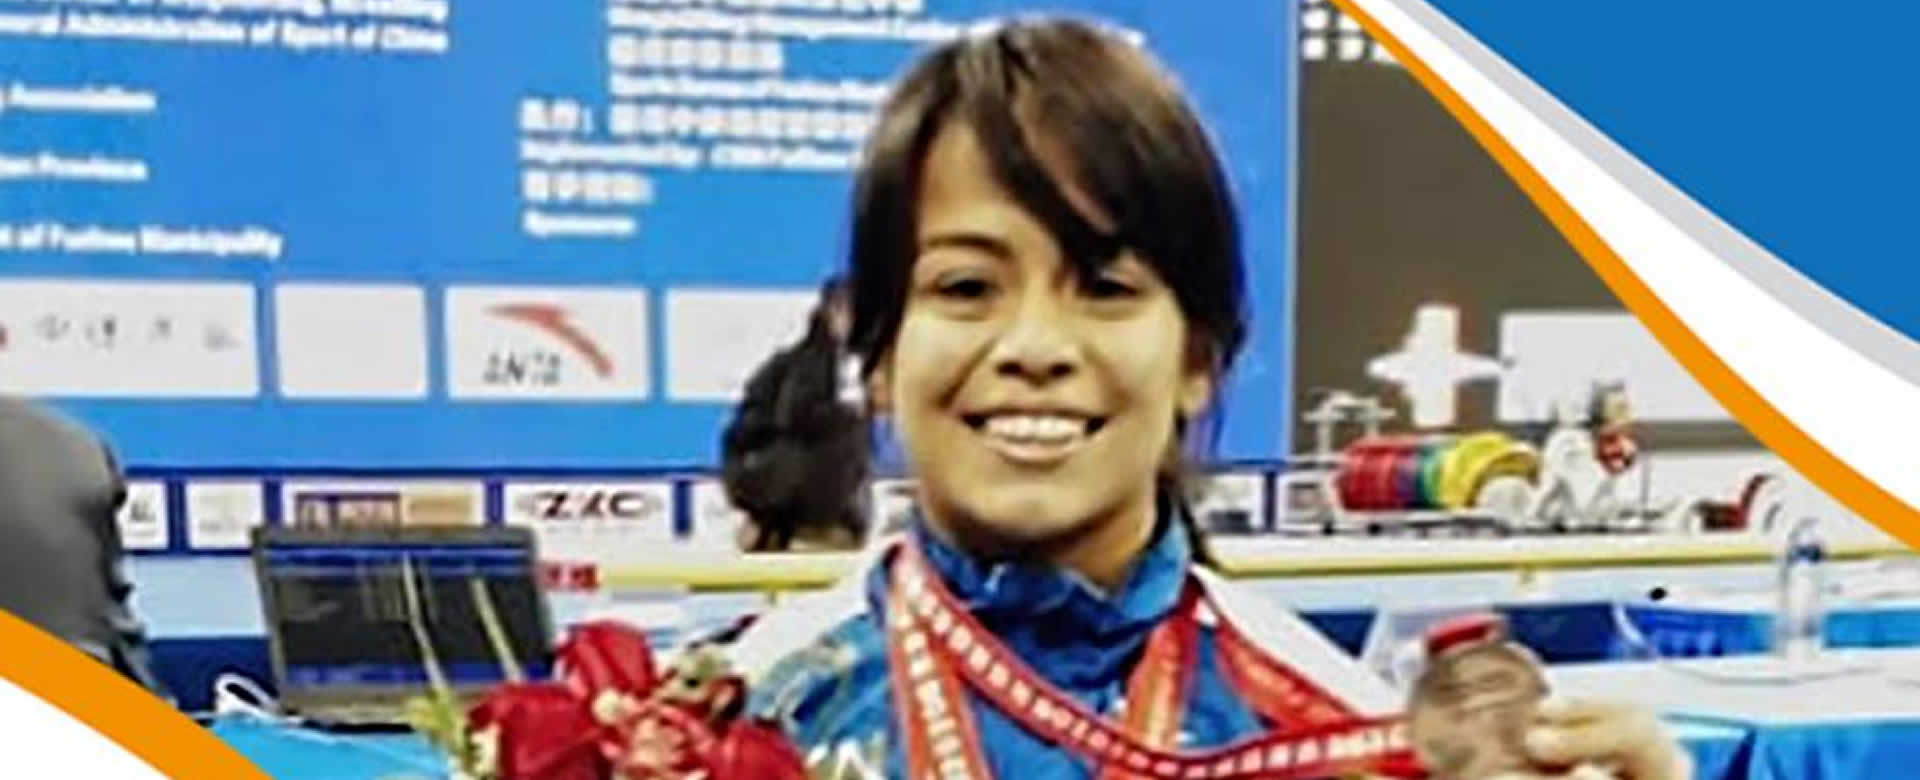 La levantadora de pesas María Navarro, terminó novena en Lima 2019